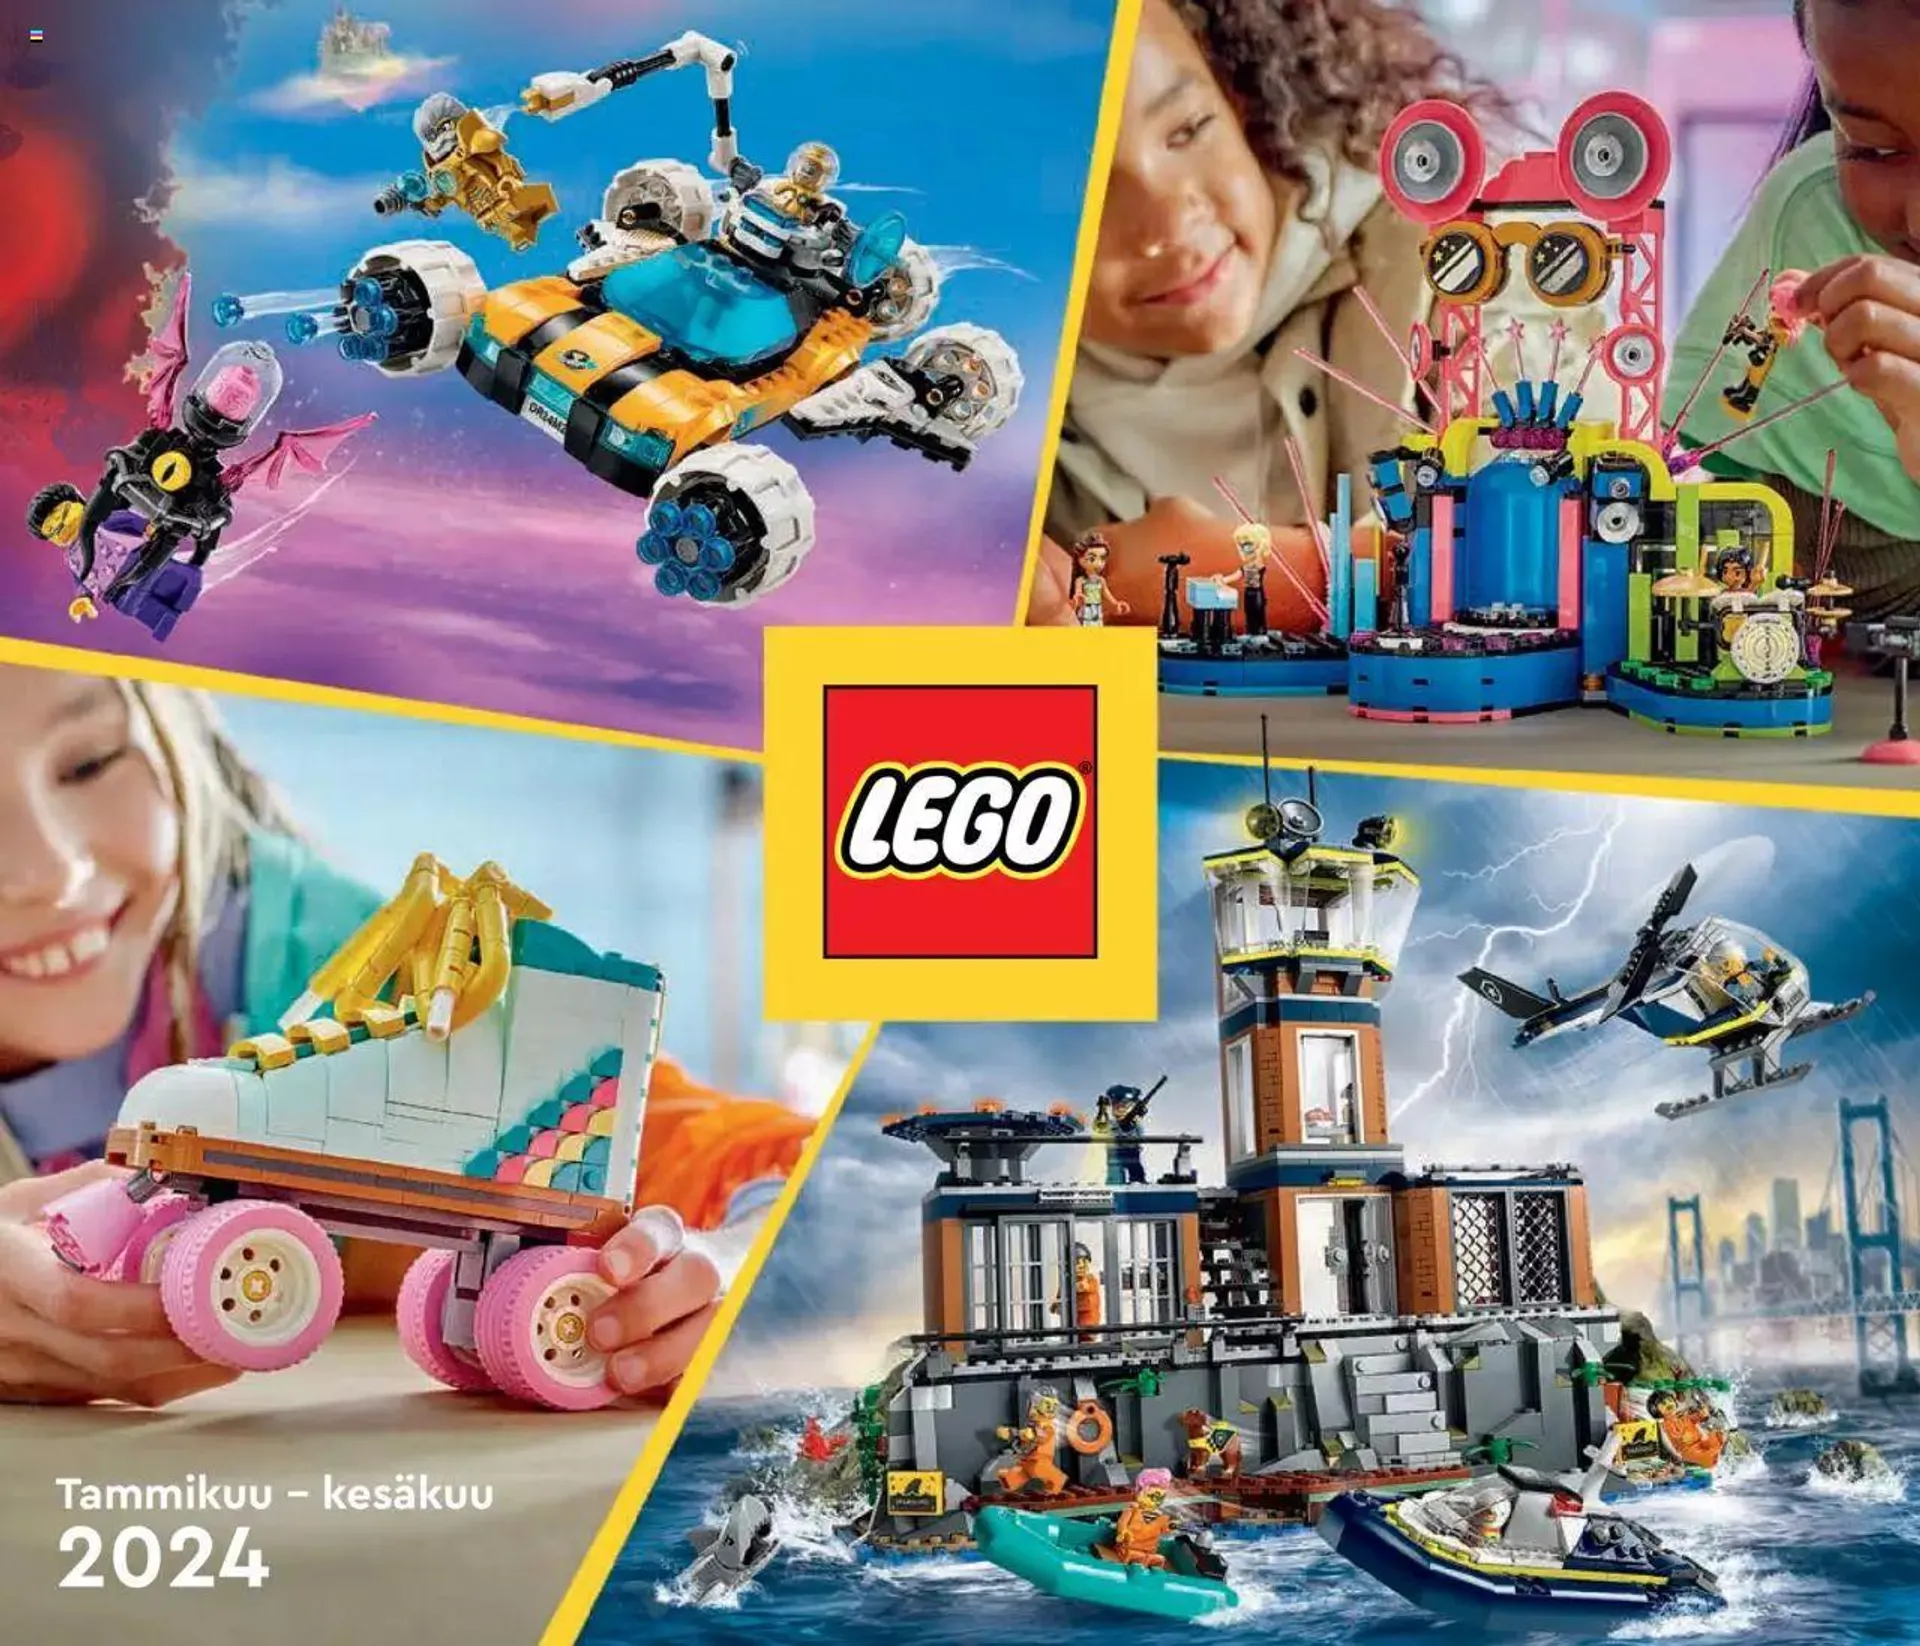 Tokmanni - Tammikuu – kesäkuu 2024 LEGO-kuvasto voimassa alkaen 1. tammikuuta - 30. kesäkuuta 2024 - Tarjouslehti sivu 1